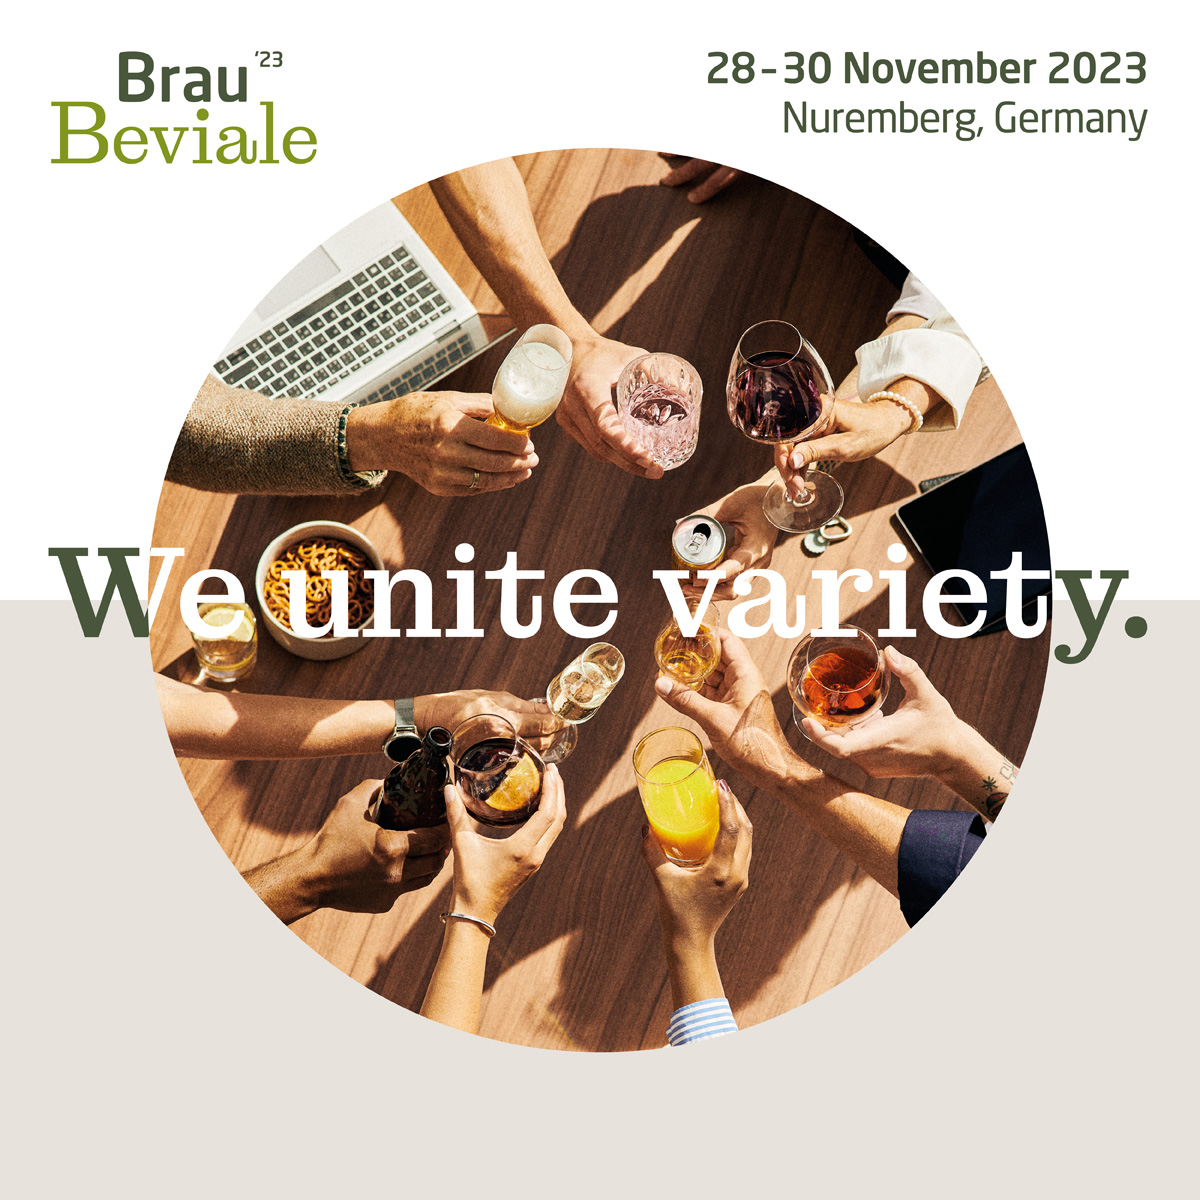 Image de promotion du salon Brau Béviale 2023 ayant eu lieu du 28 au 30 novembre 2023